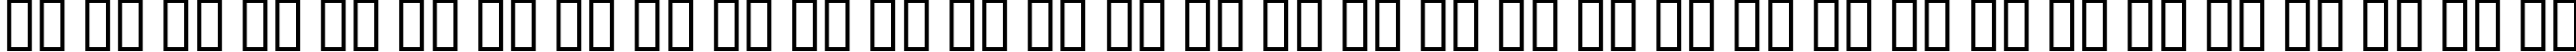 Пример написания русского алфавита шрифтом YBandTuner